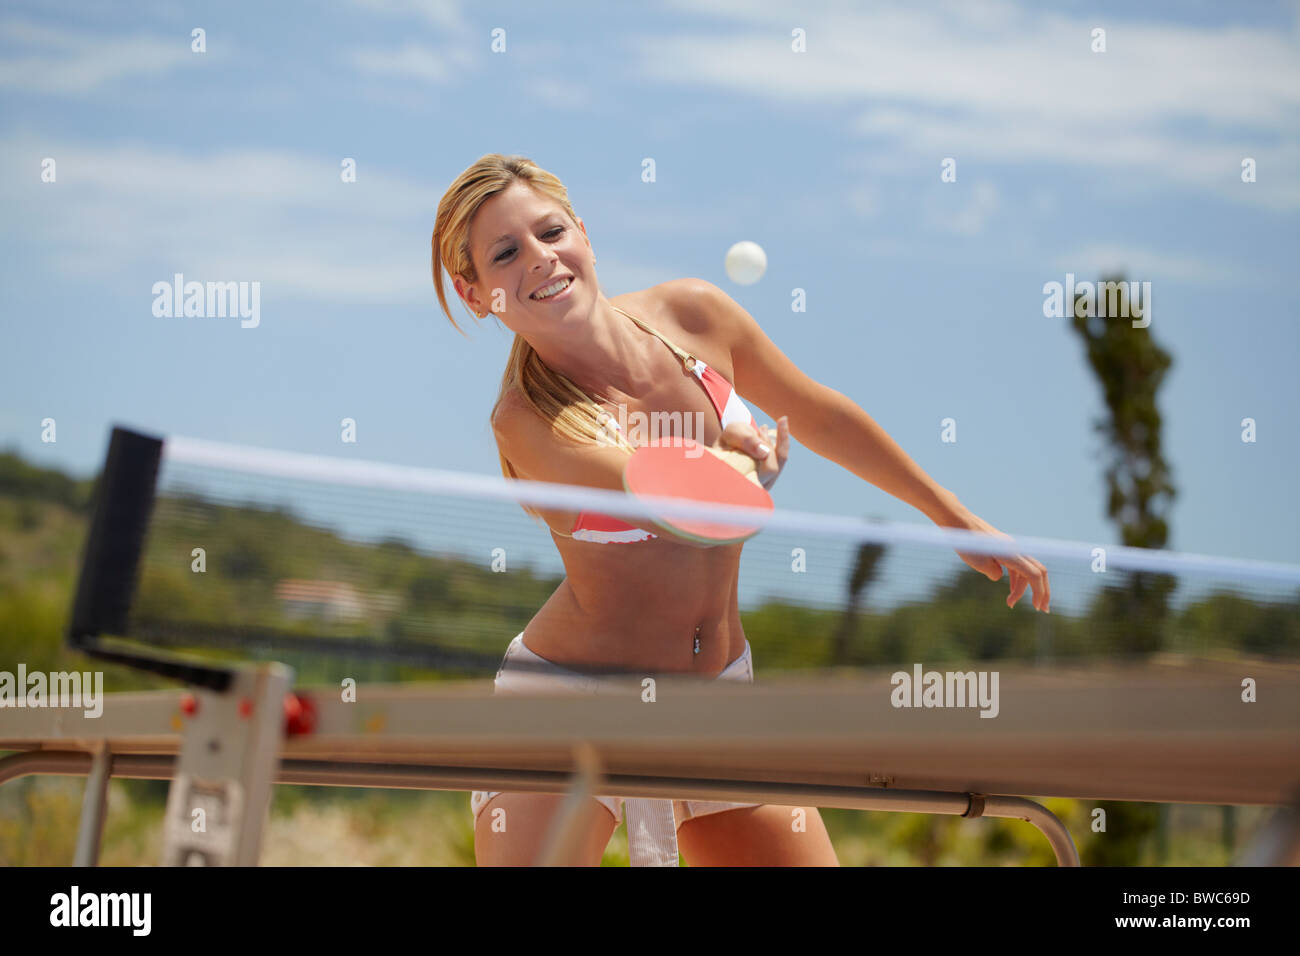 Woman in bikini playing table tennis Stock Photo